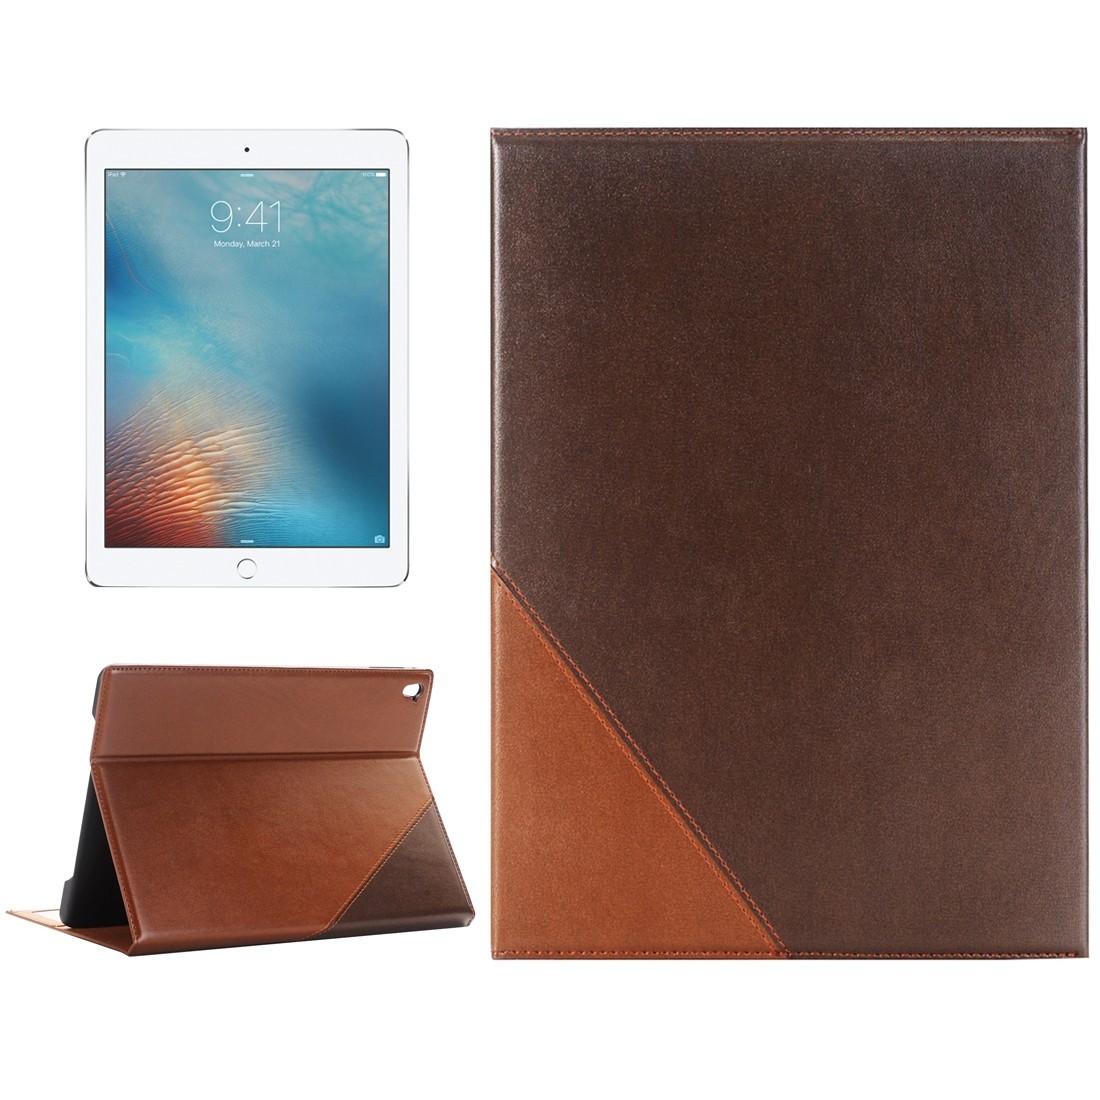 Кожаный чехол с отсеками для денег и визиток для iPad Pro 9.7 (кофейно-коричневый)